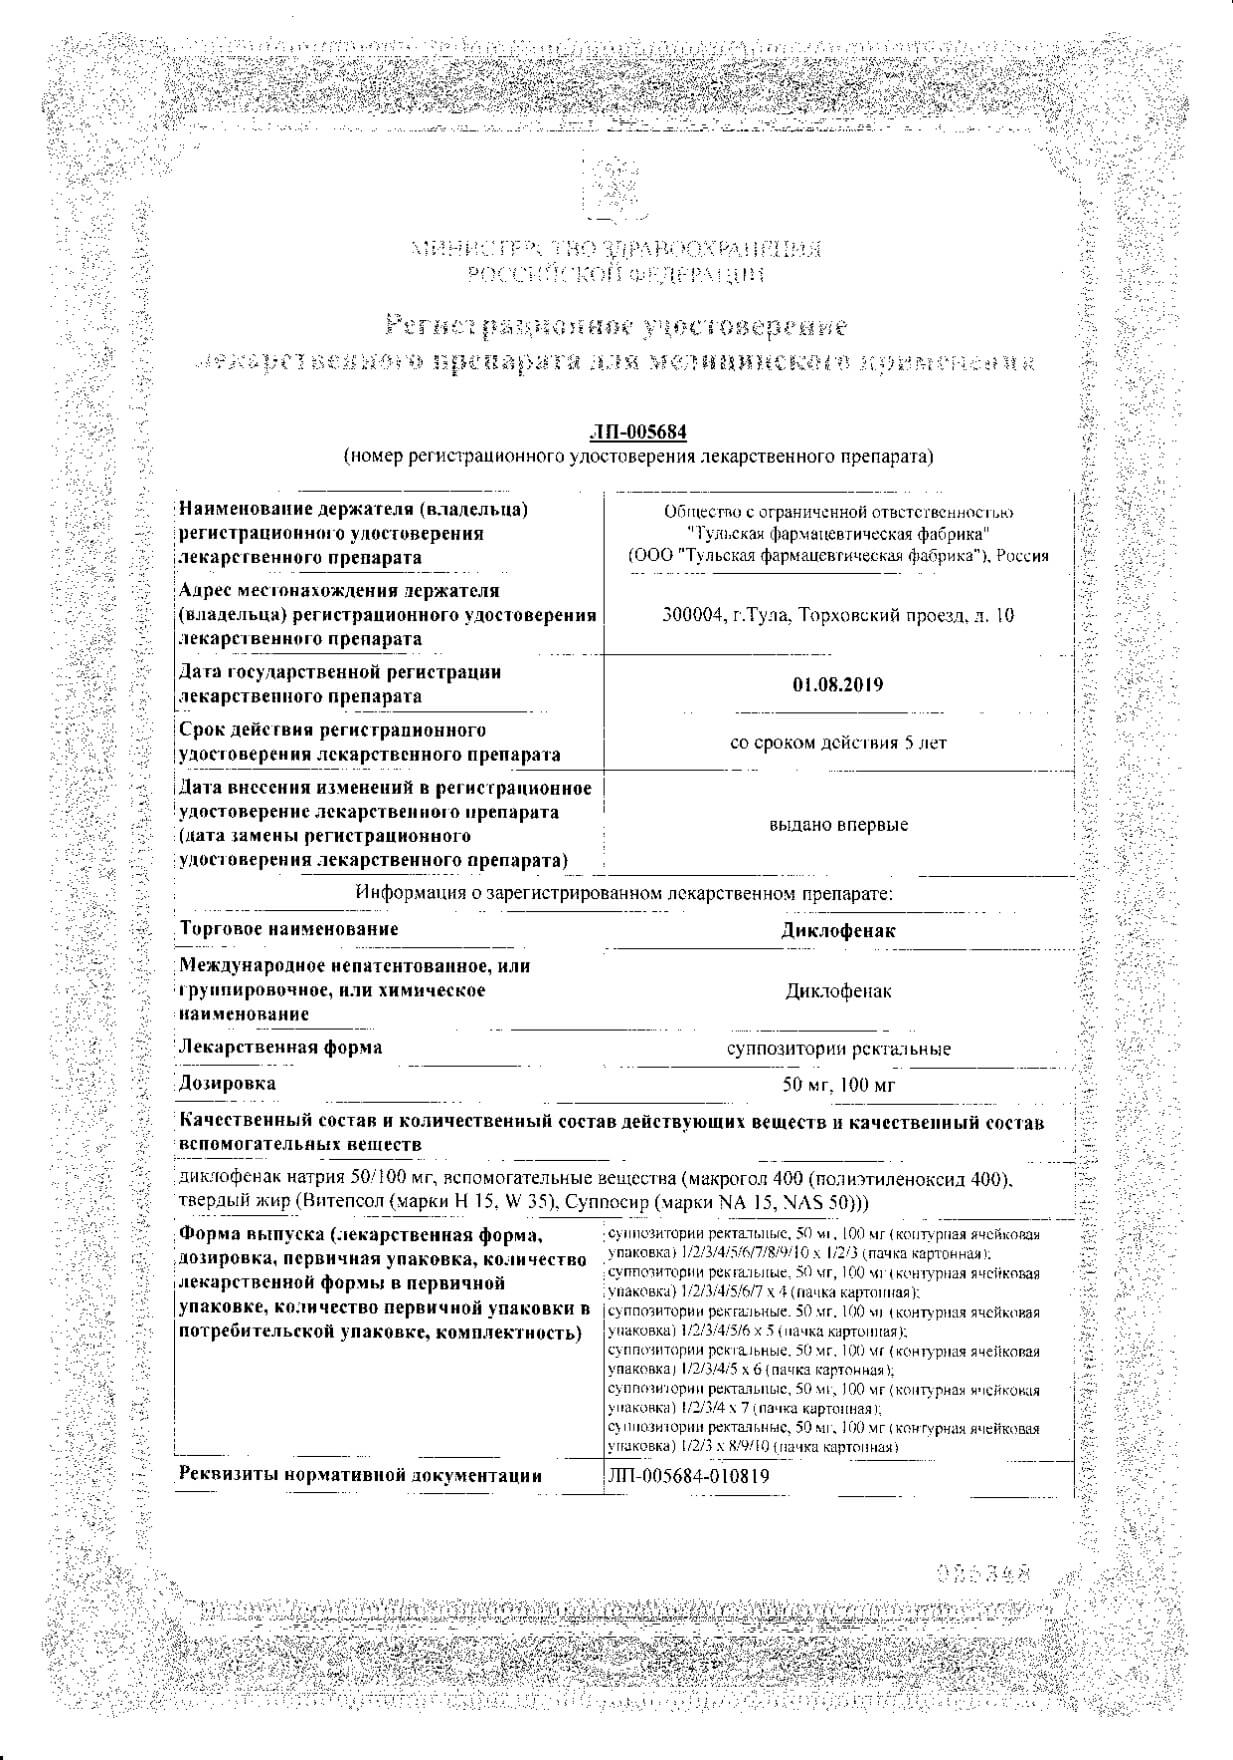 Диклофенак суппозитории ректальные 100мг 10шт: сертификат